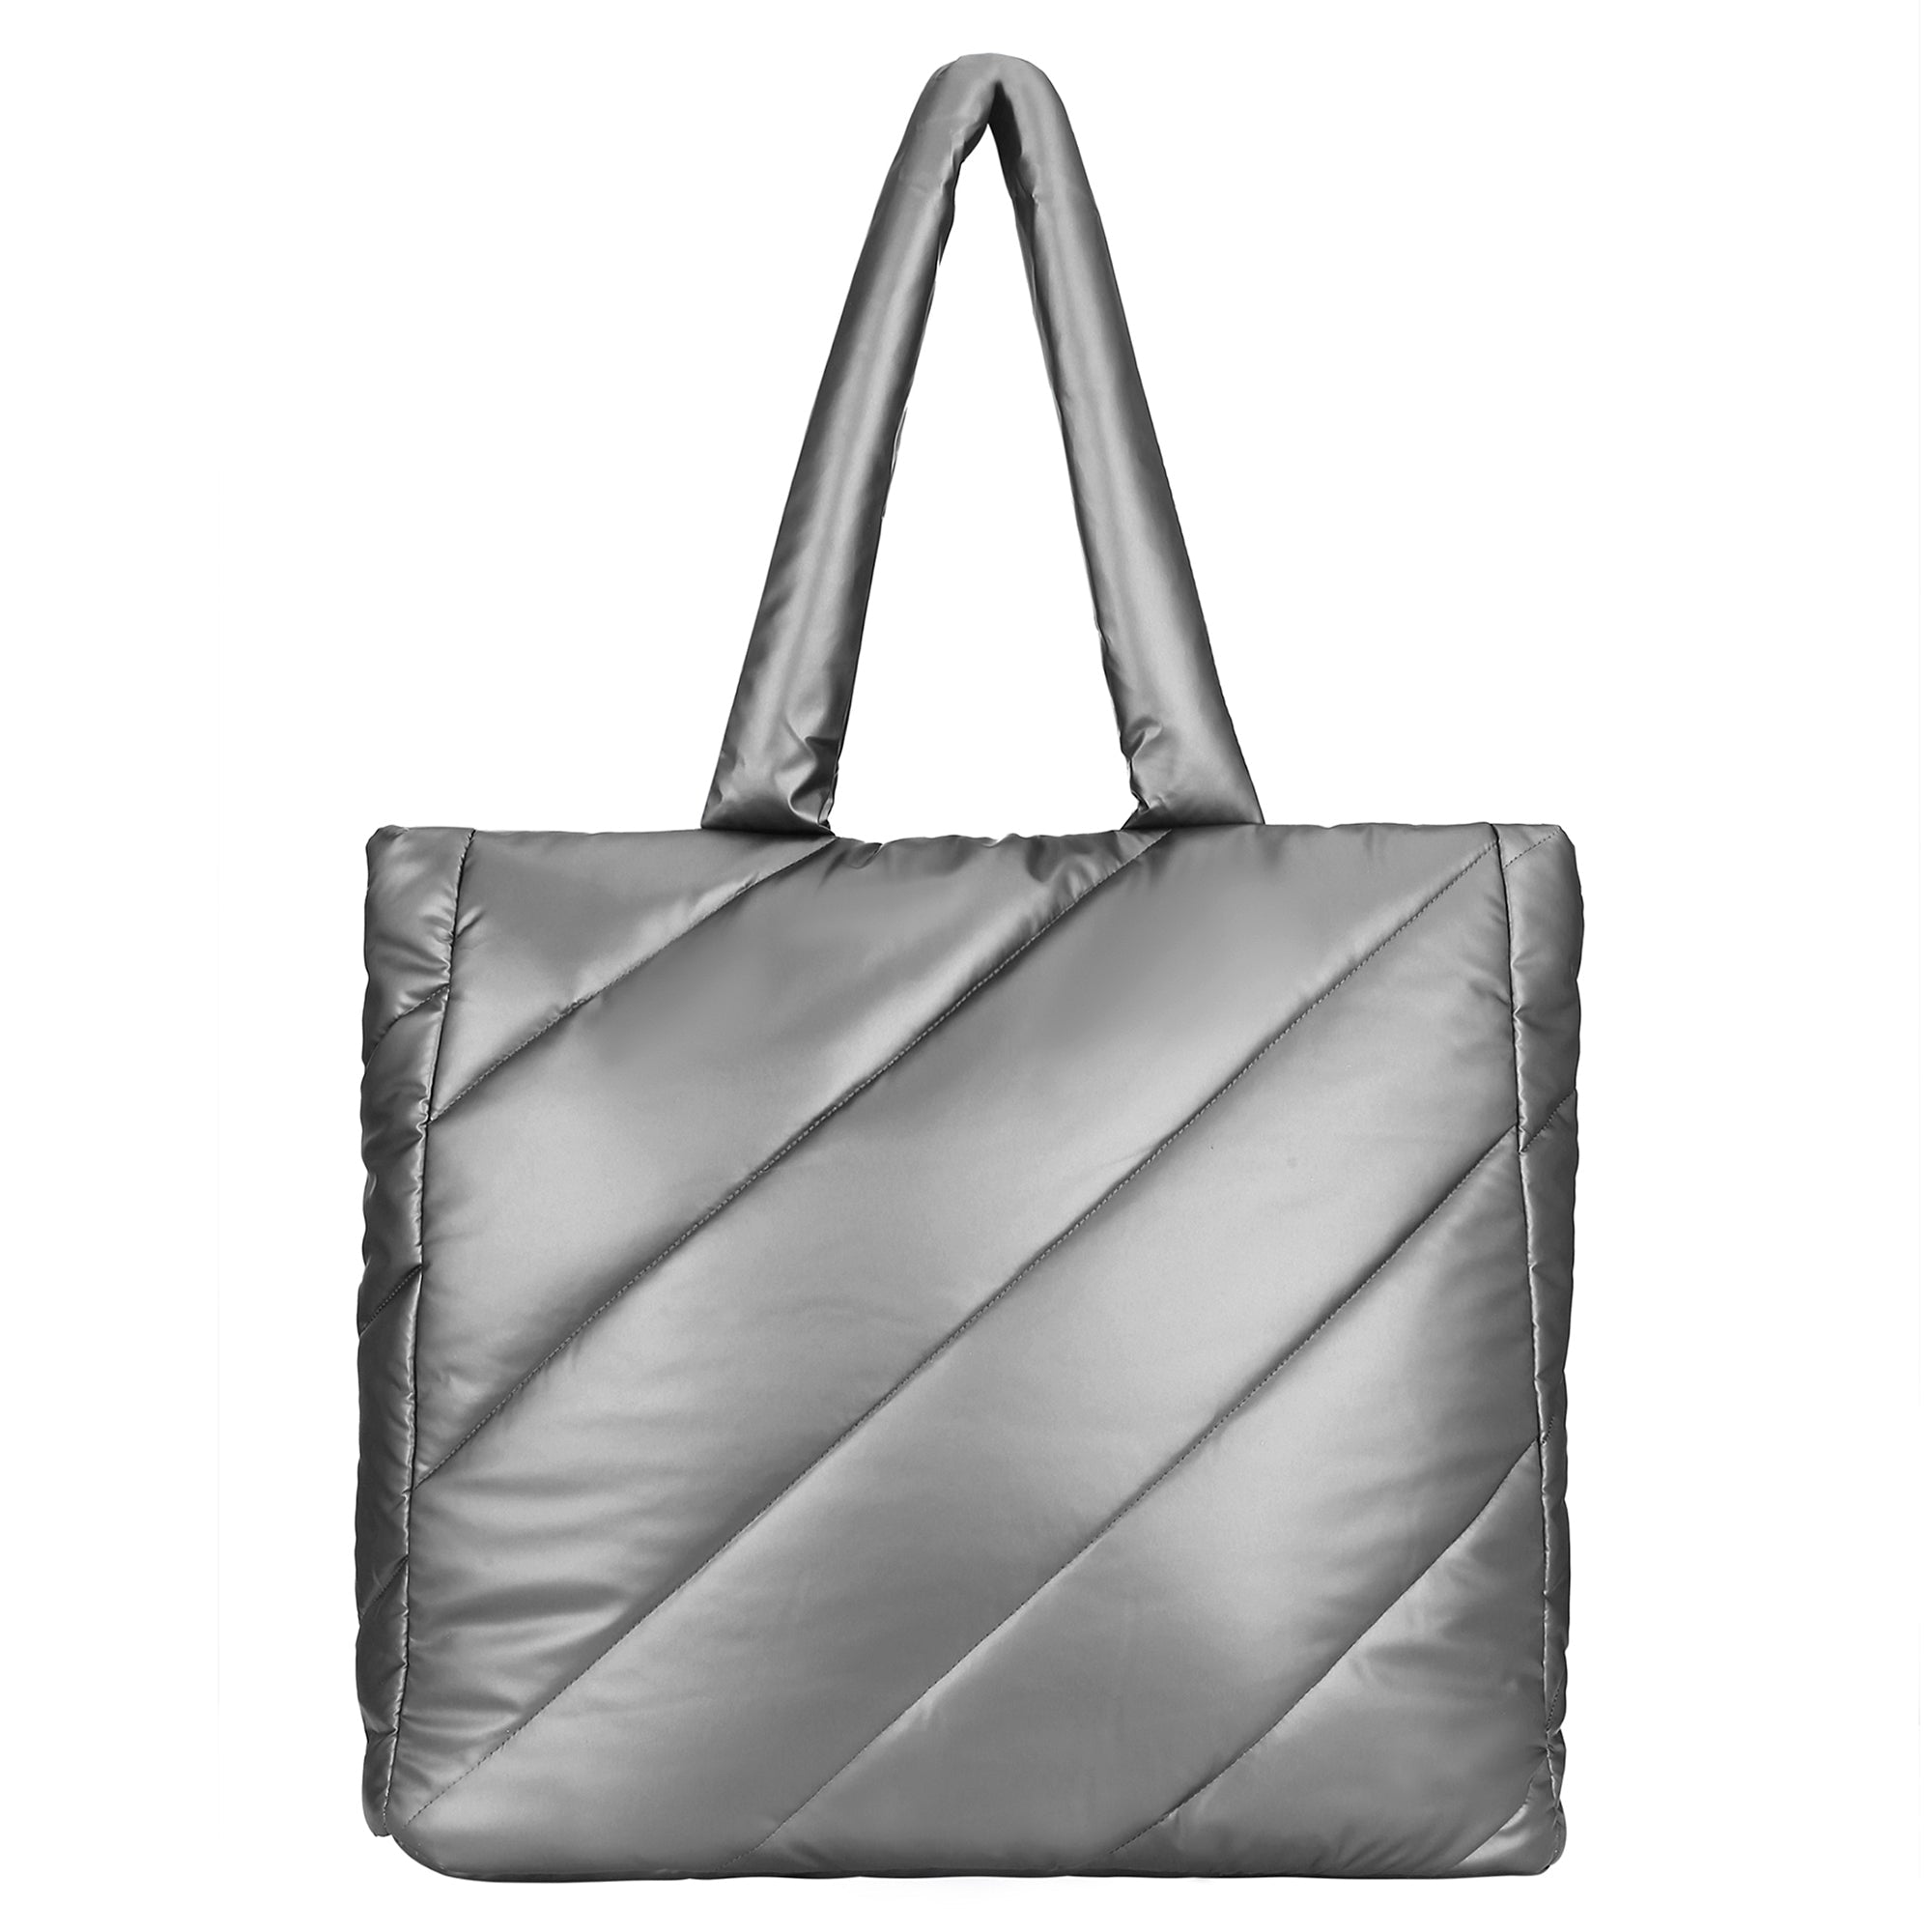 Accessorize London Women's Silver Metallic Tote Bag - Accessorize